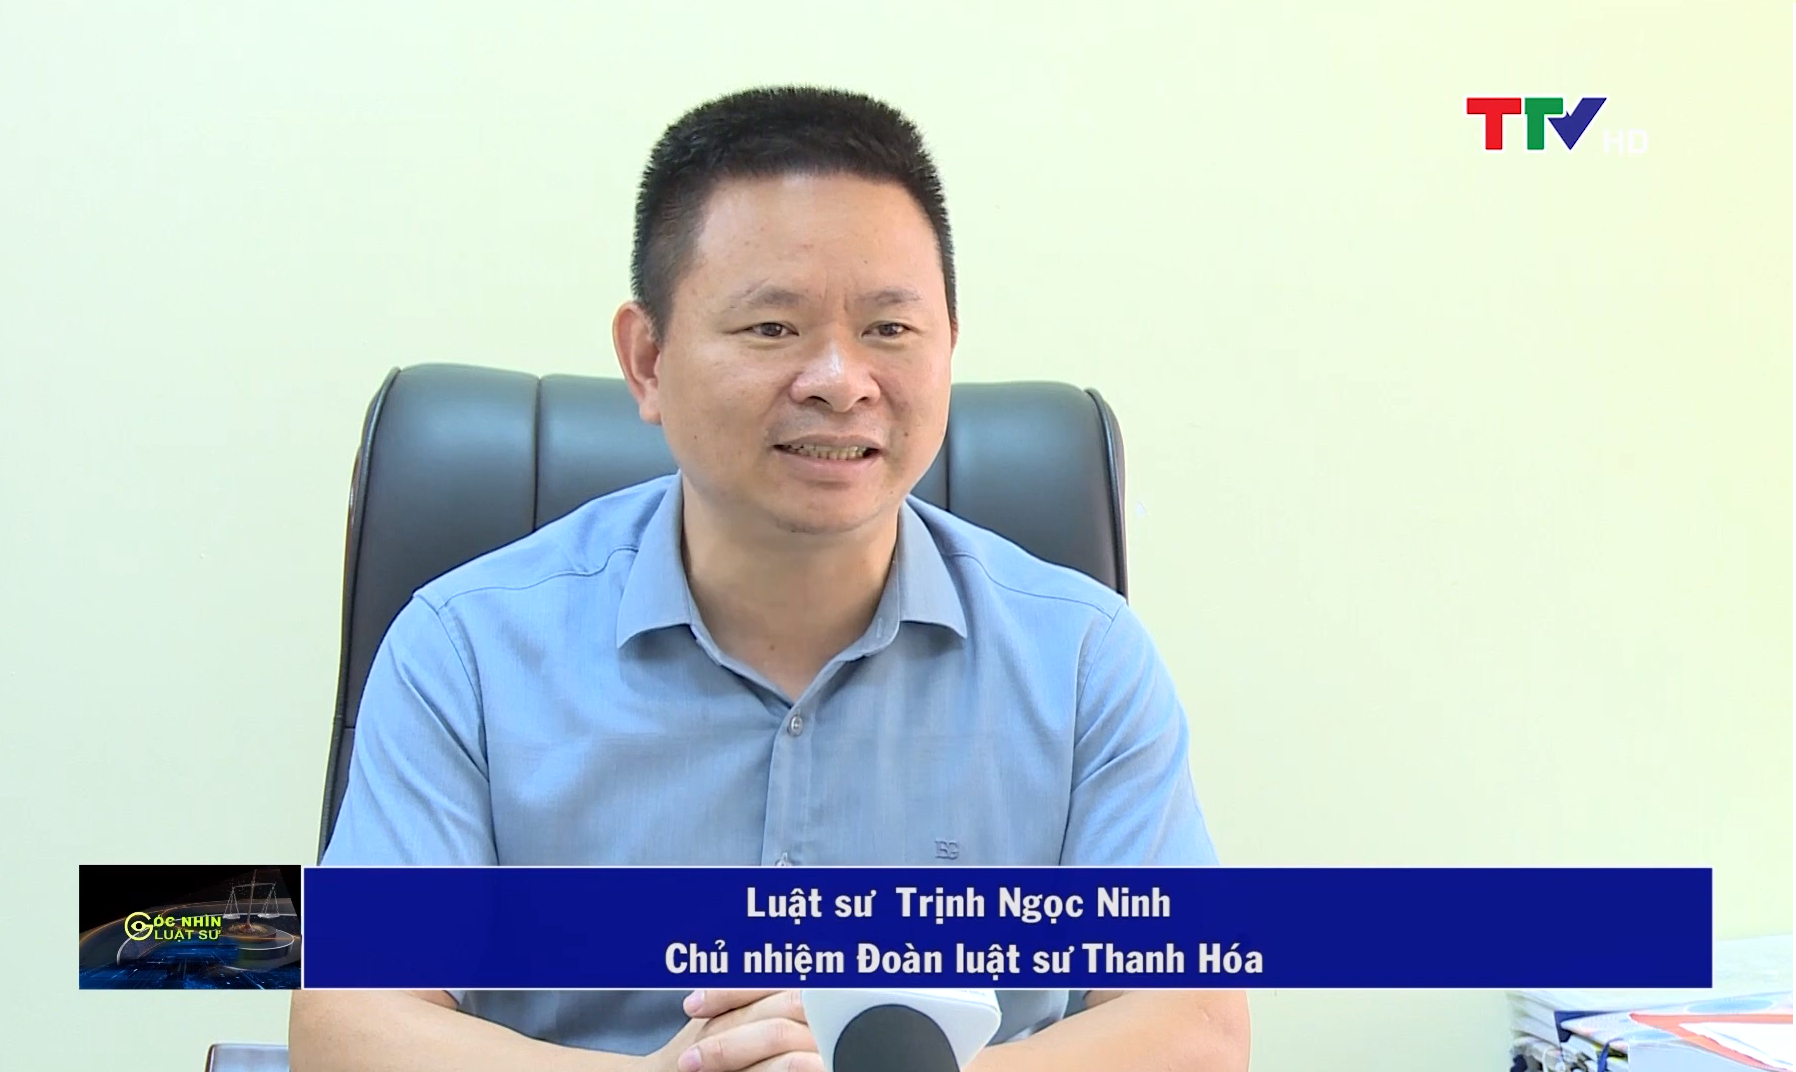 Luật sư Trịnh Ngọc Ninh, Chủ nhiệm đoàn luật sư Thanh Hóa.